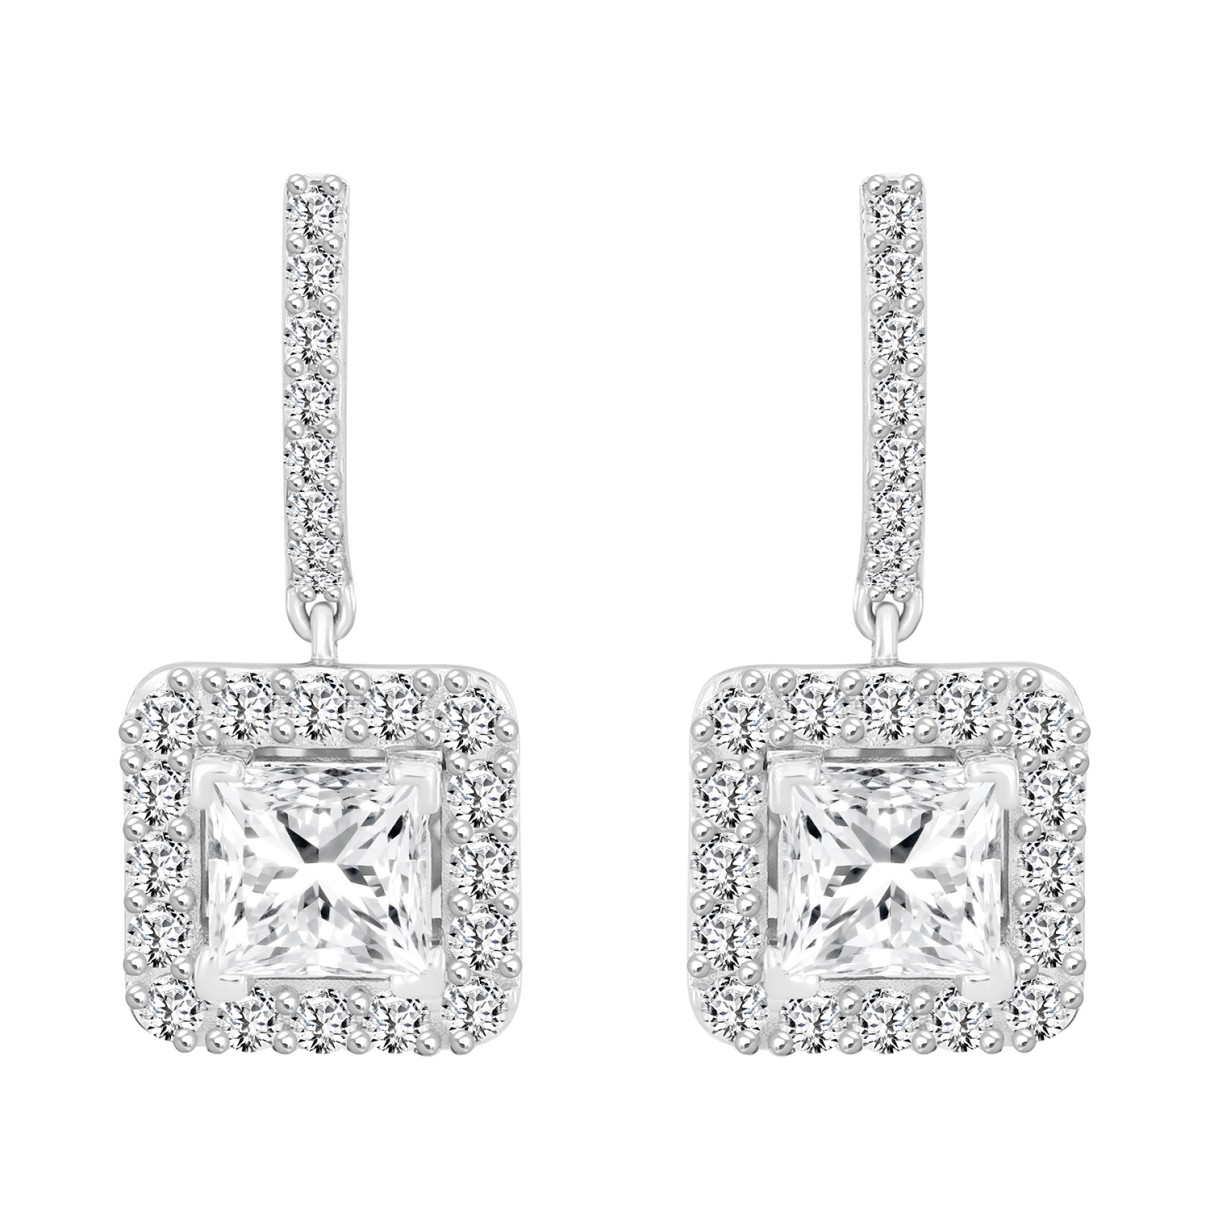 LADIES EARRINGS 3CT PRINCESS/ROUND DIAMOND 14K WHITE GOLD (CENTER STONE PRINCESS DIAMOND 2CT )